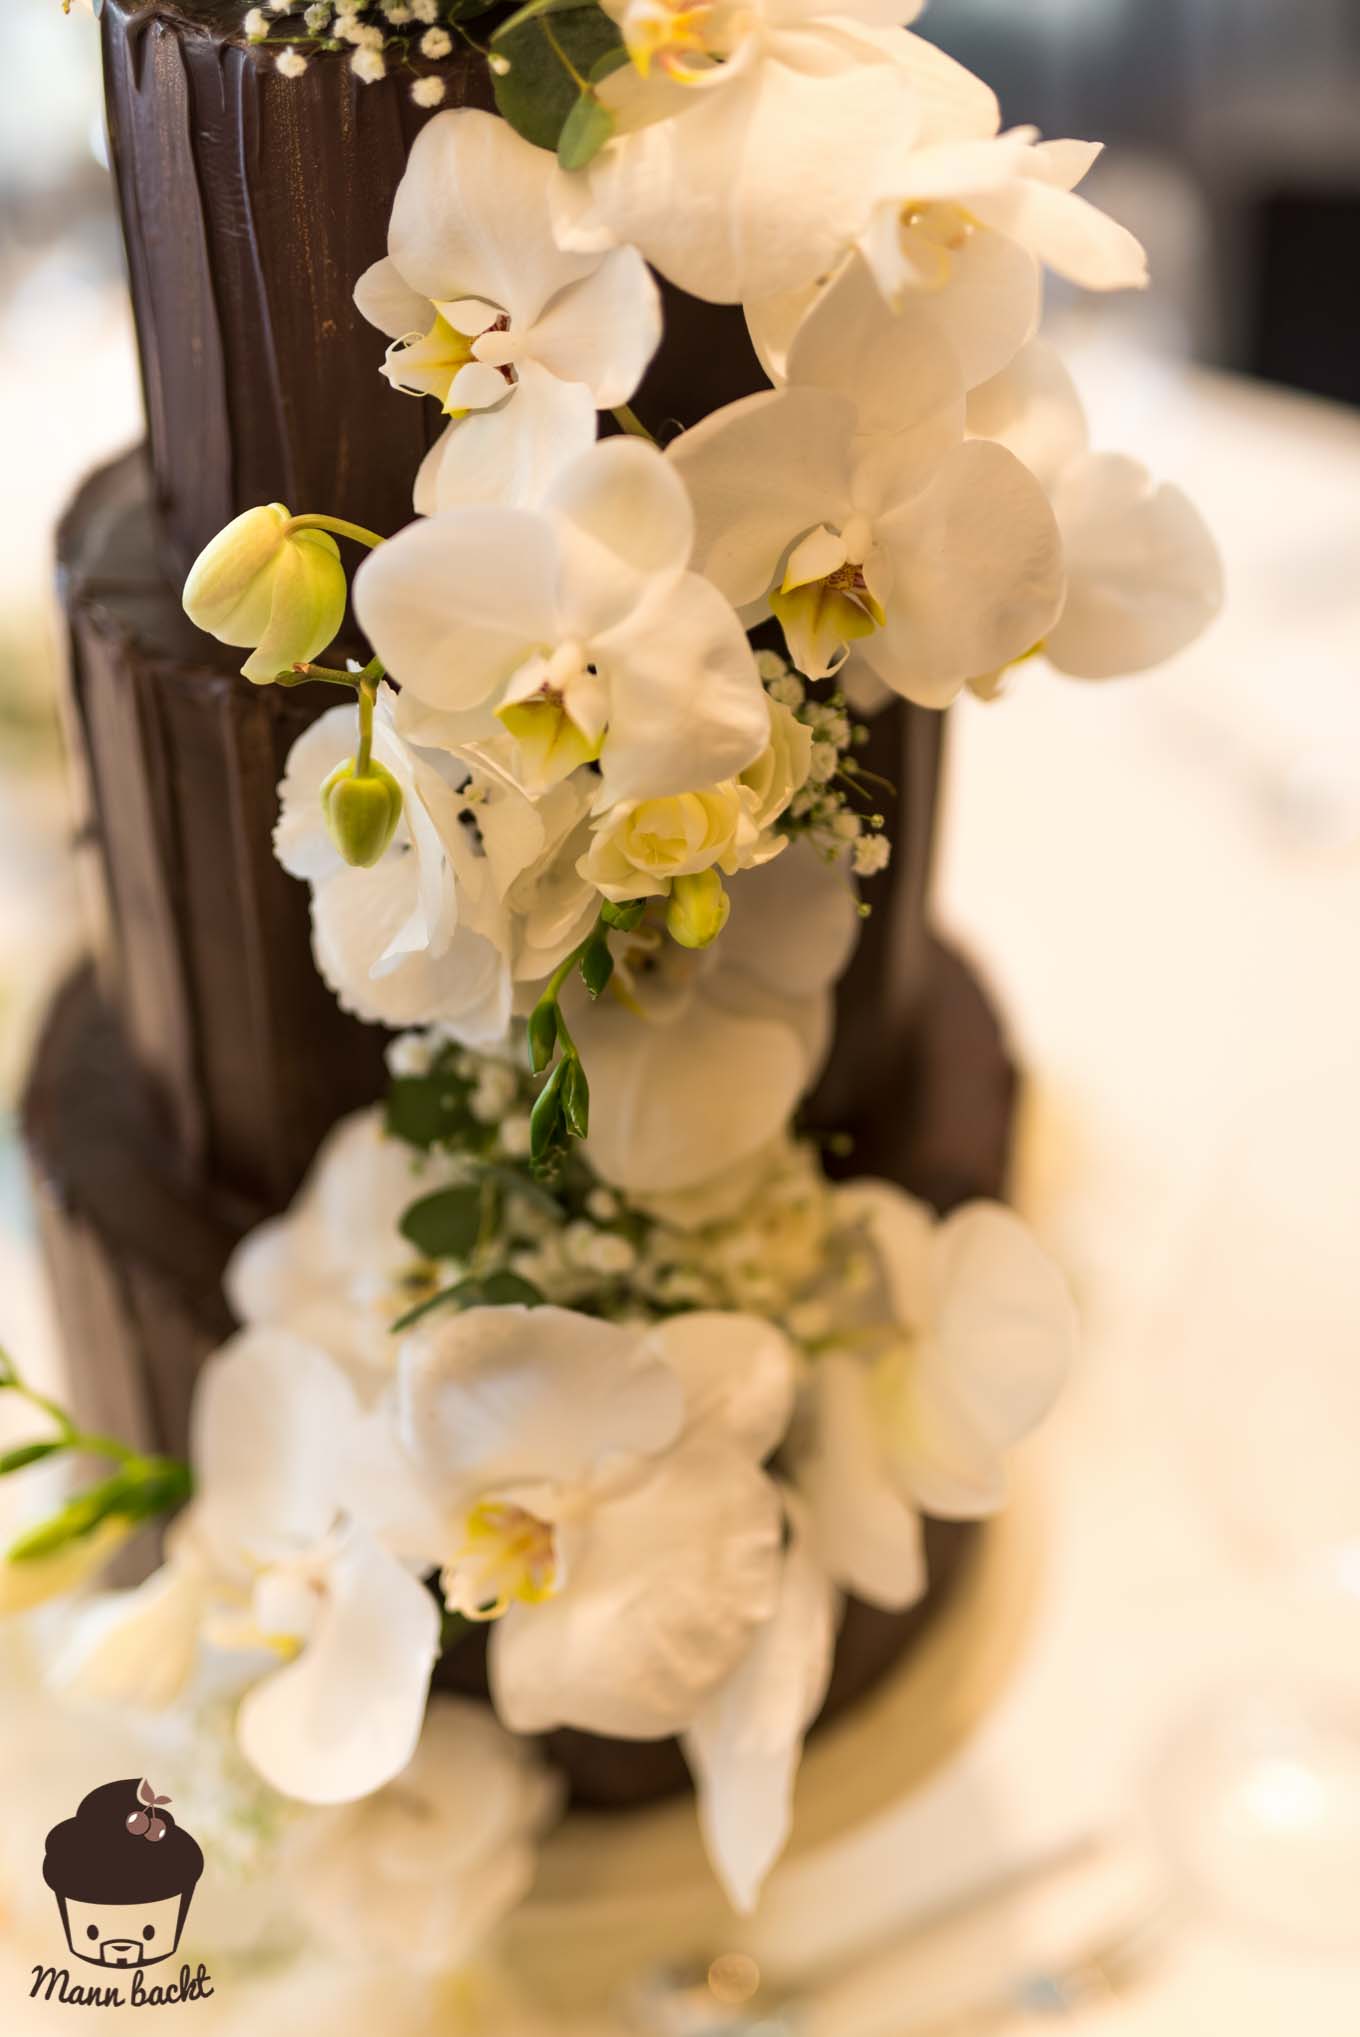 Mann backt Hochzeitstorte mit Orchideen Wedding Cake Orchids (6 von 7)